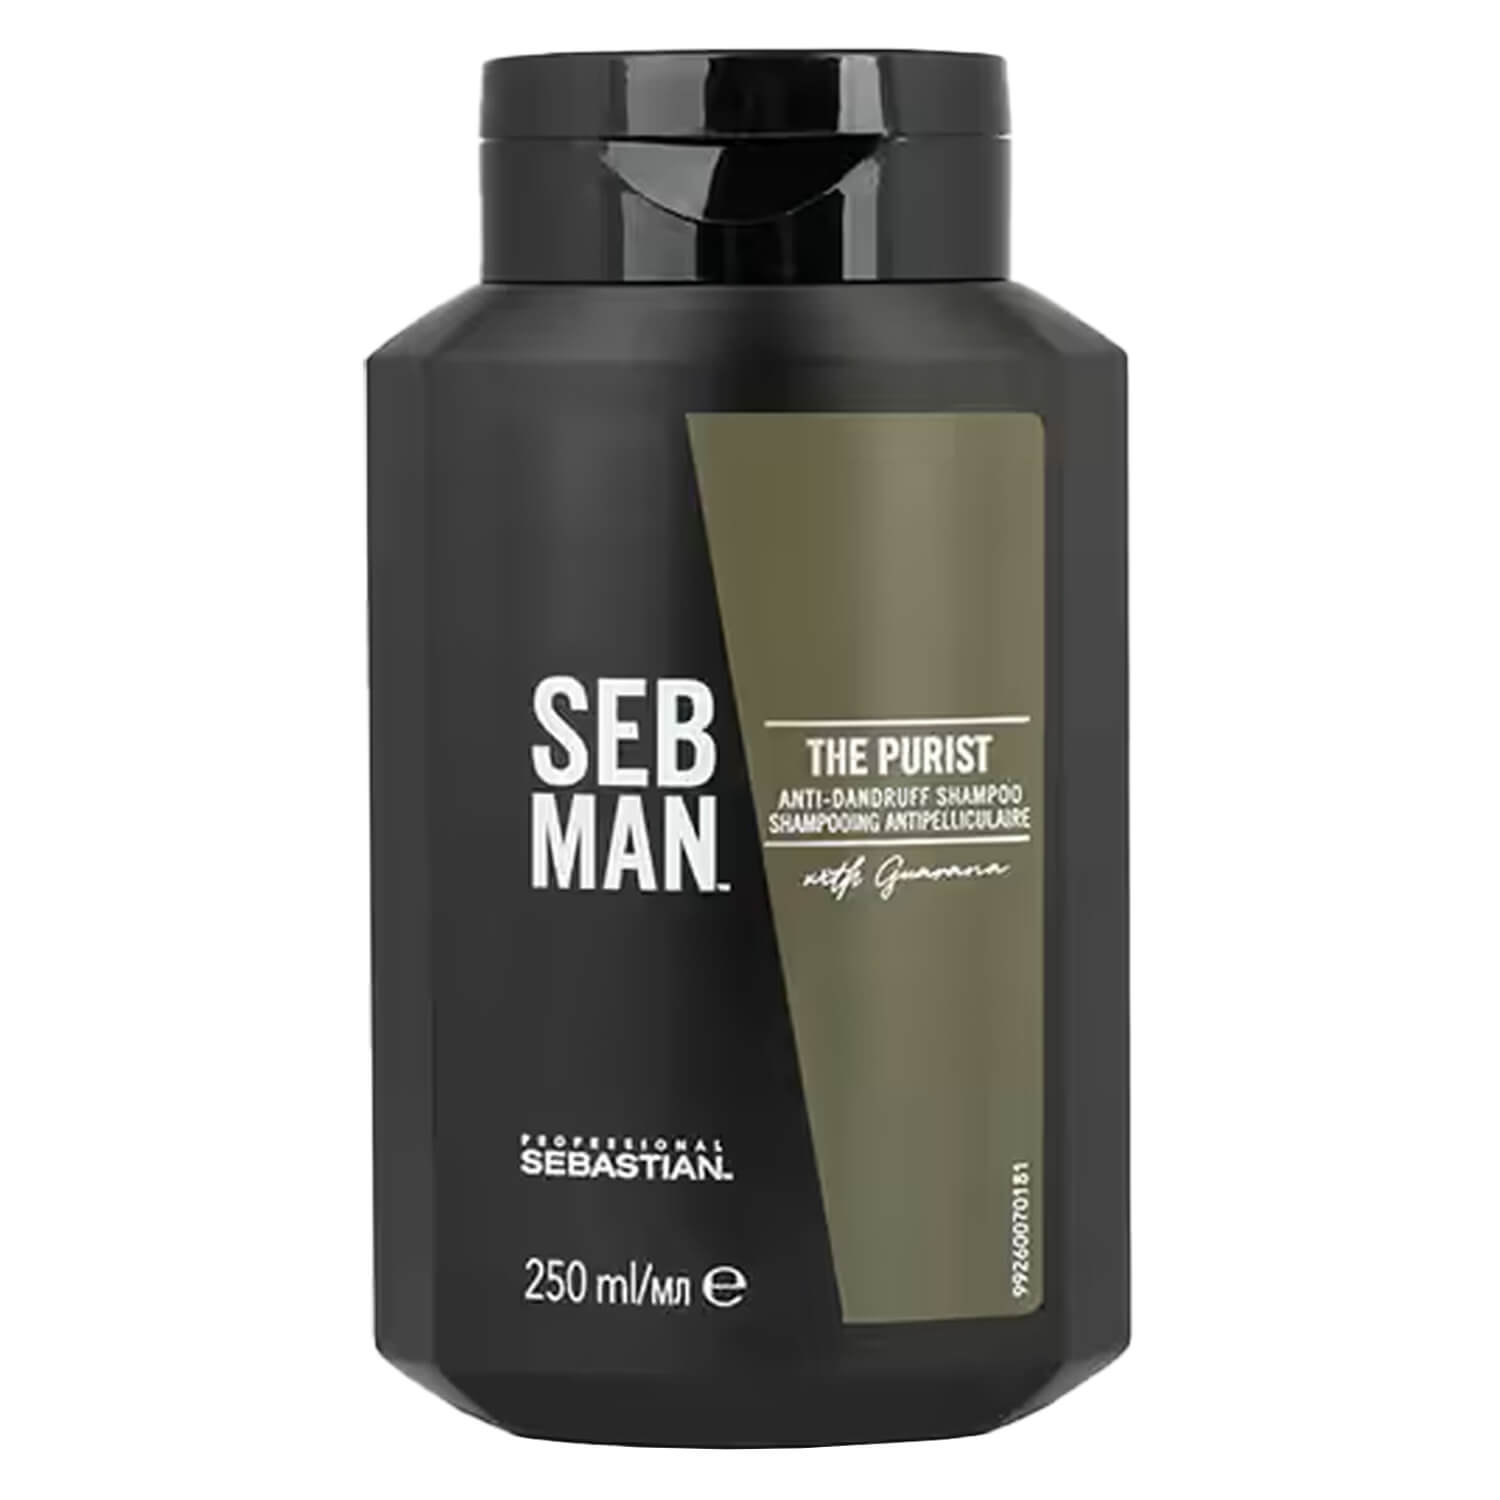 Image du produit de SEB MAN - The Purist Anti-Dandruff Shampoo